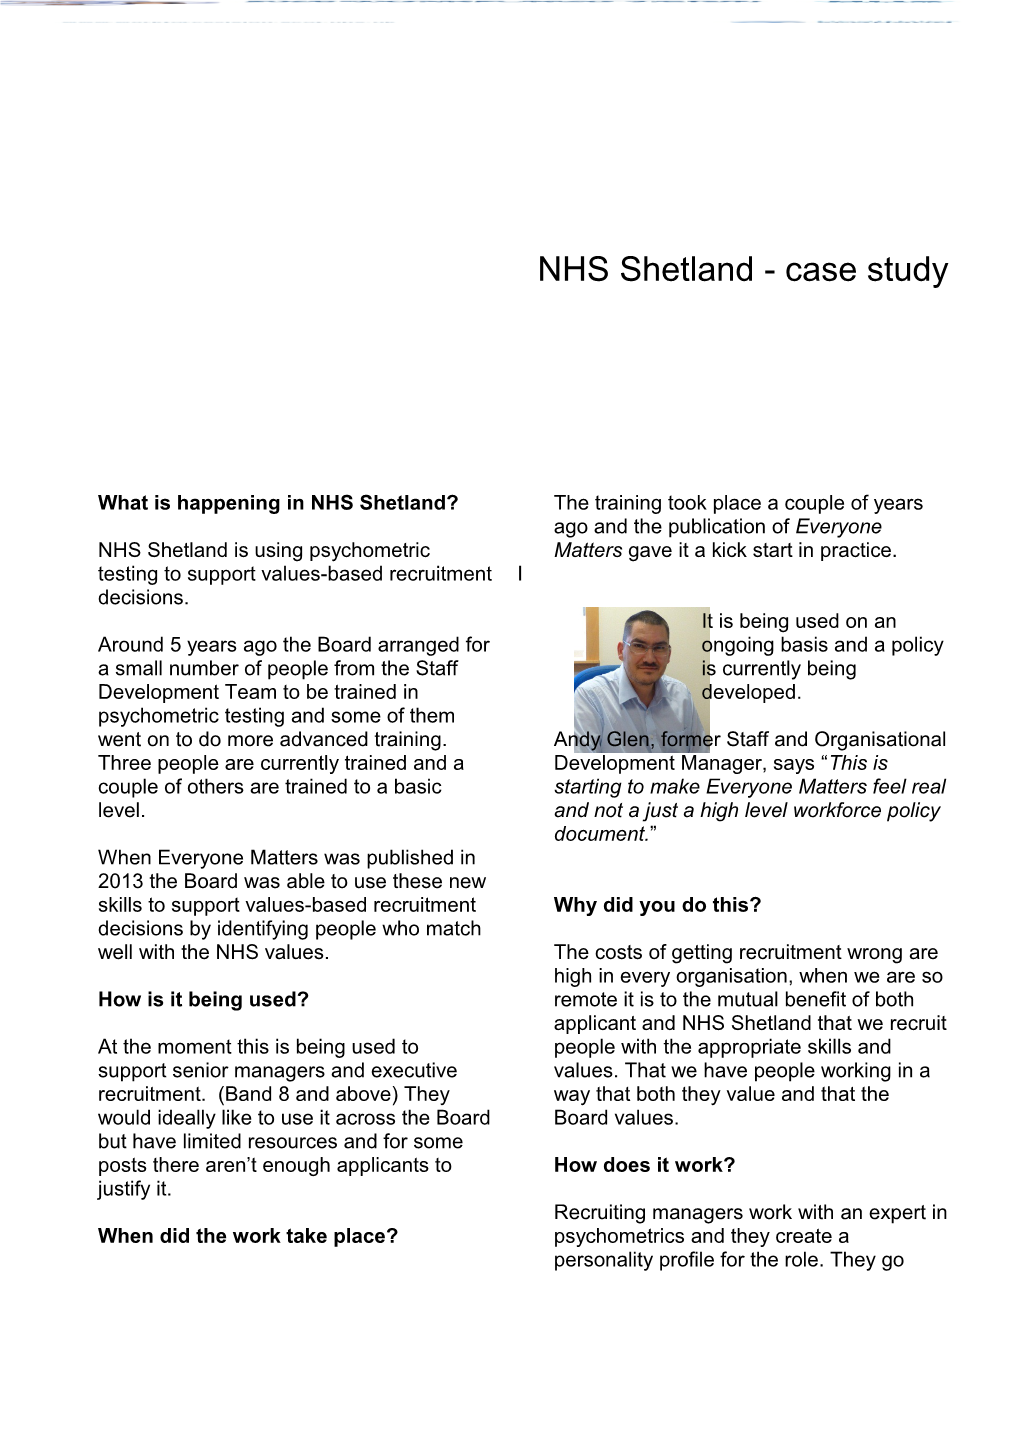 What Is Happening in NHS Shetland?